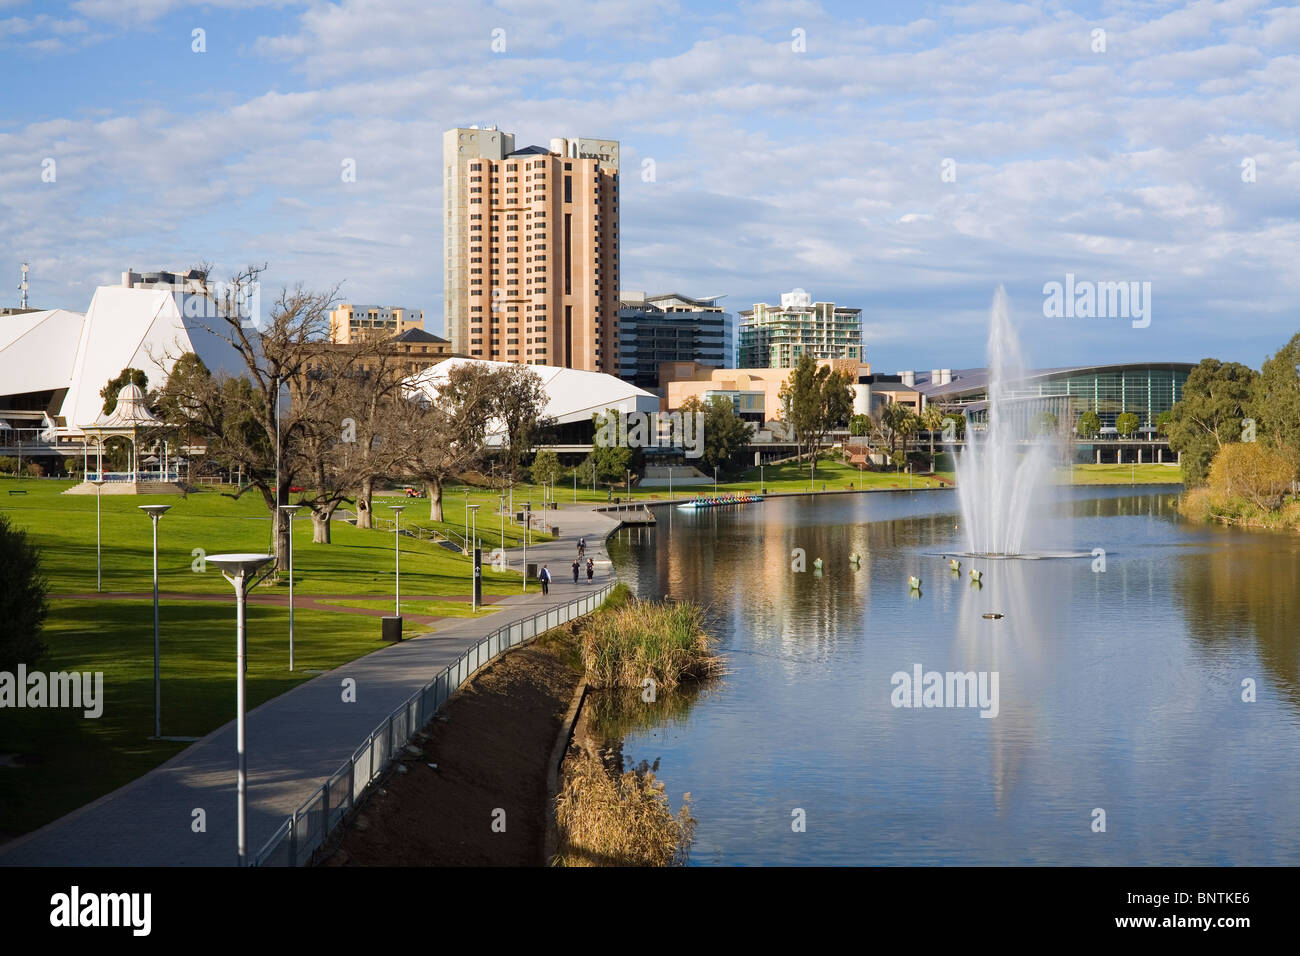 Vue le long de la rivière Torrens, l'Adelaide Festival Centre et centre de congrès. Adélaïde, Australie du Sud, Australie. Banque D'Images